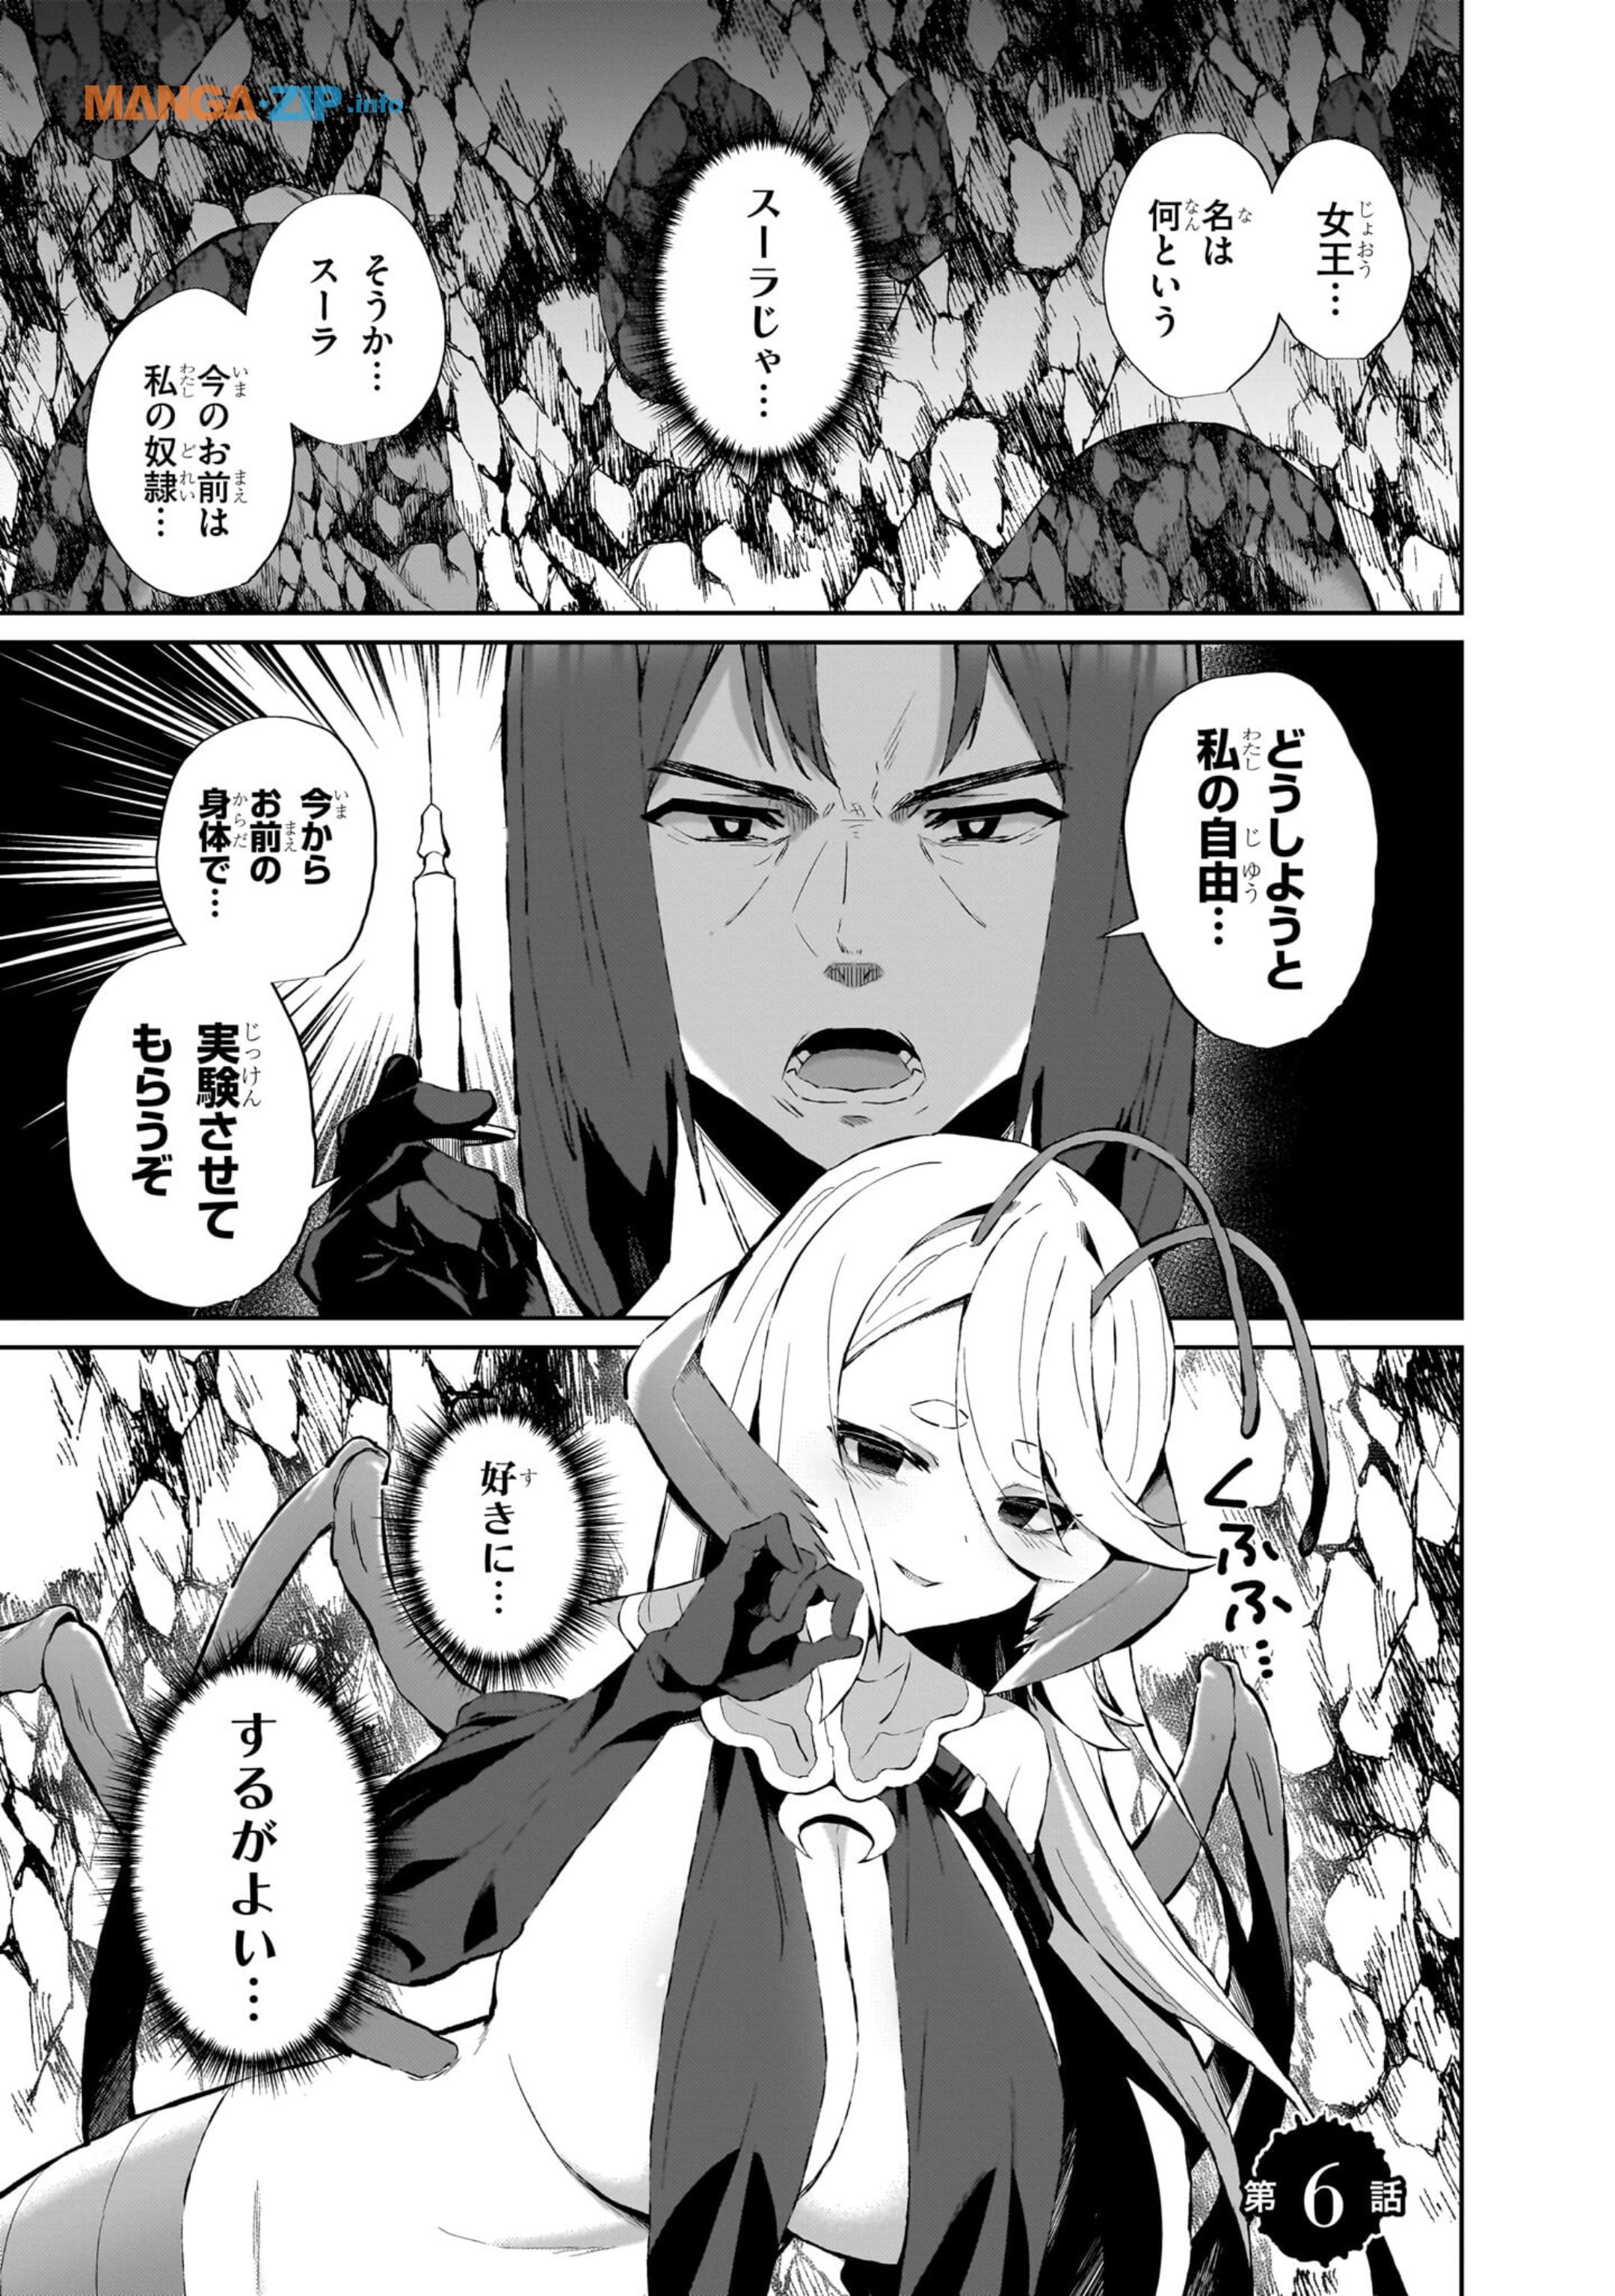 Nogaku Hakase no Isekai Muso Kinki no Chishiki de Kizuku Monster Musume Harem - Chapter 6 - Page 1